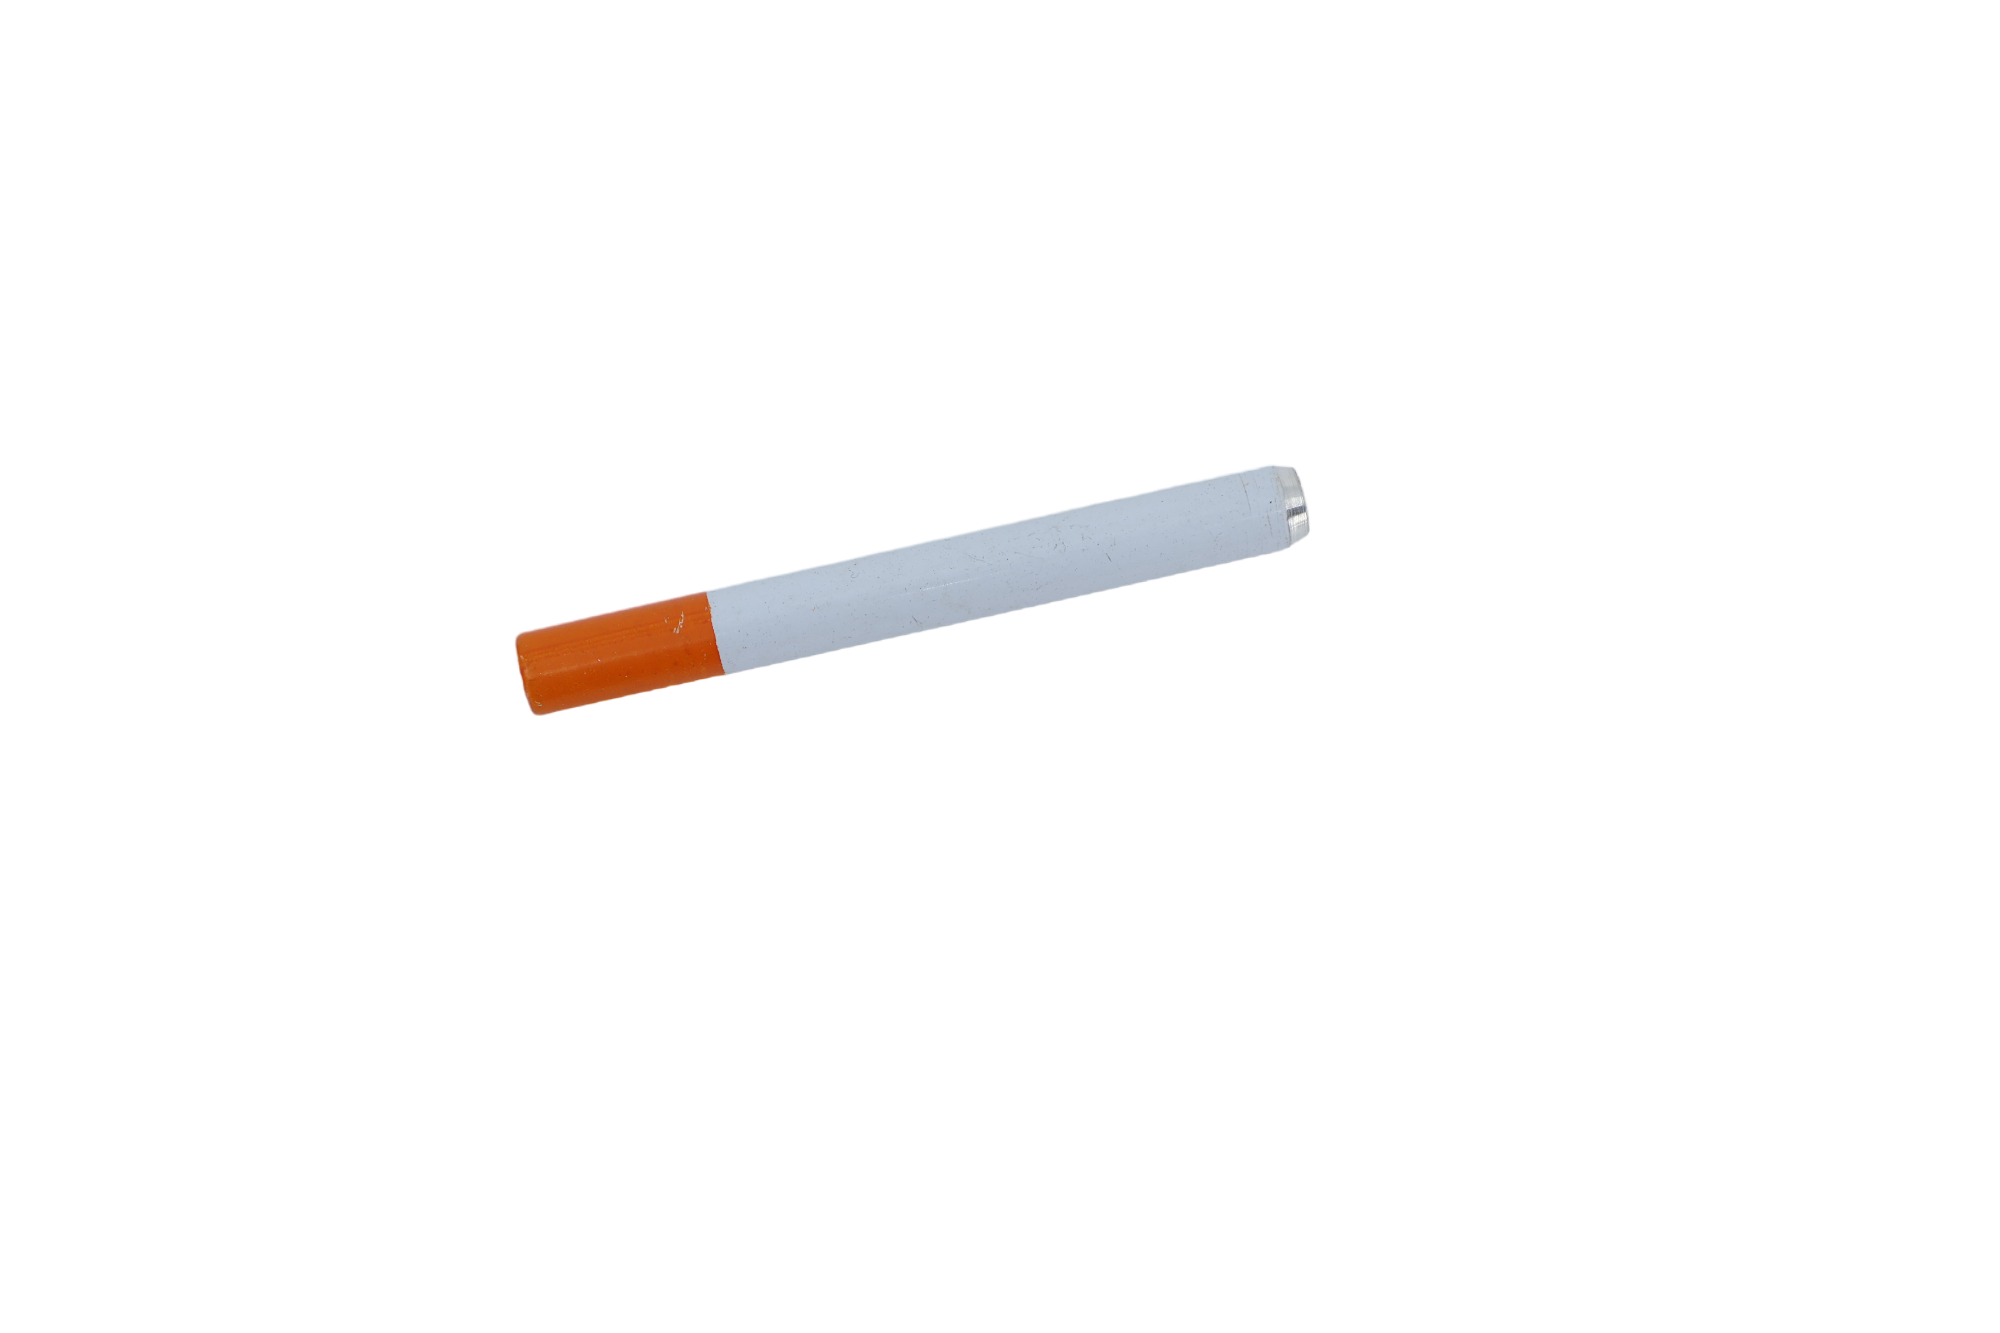 One Hitter Cigarette